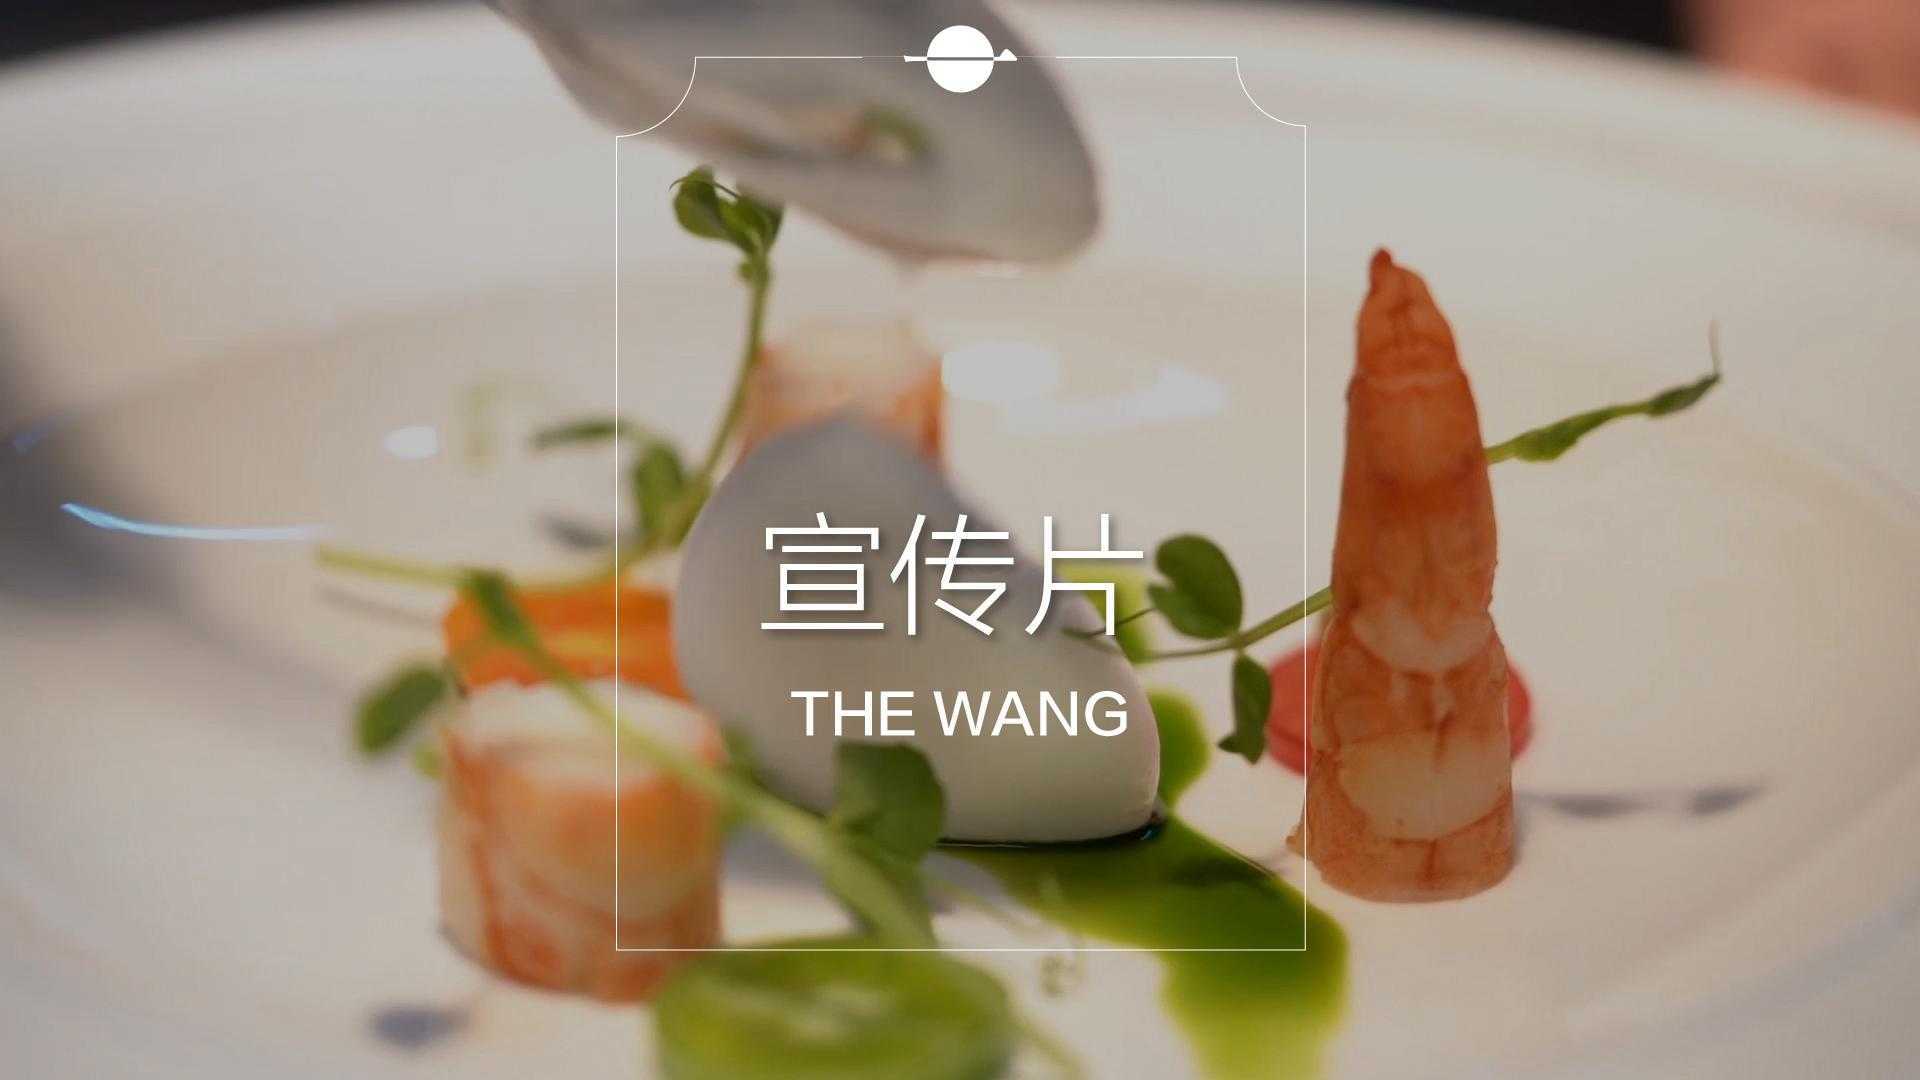 THE WANG 米其林西餐厅宣传视频